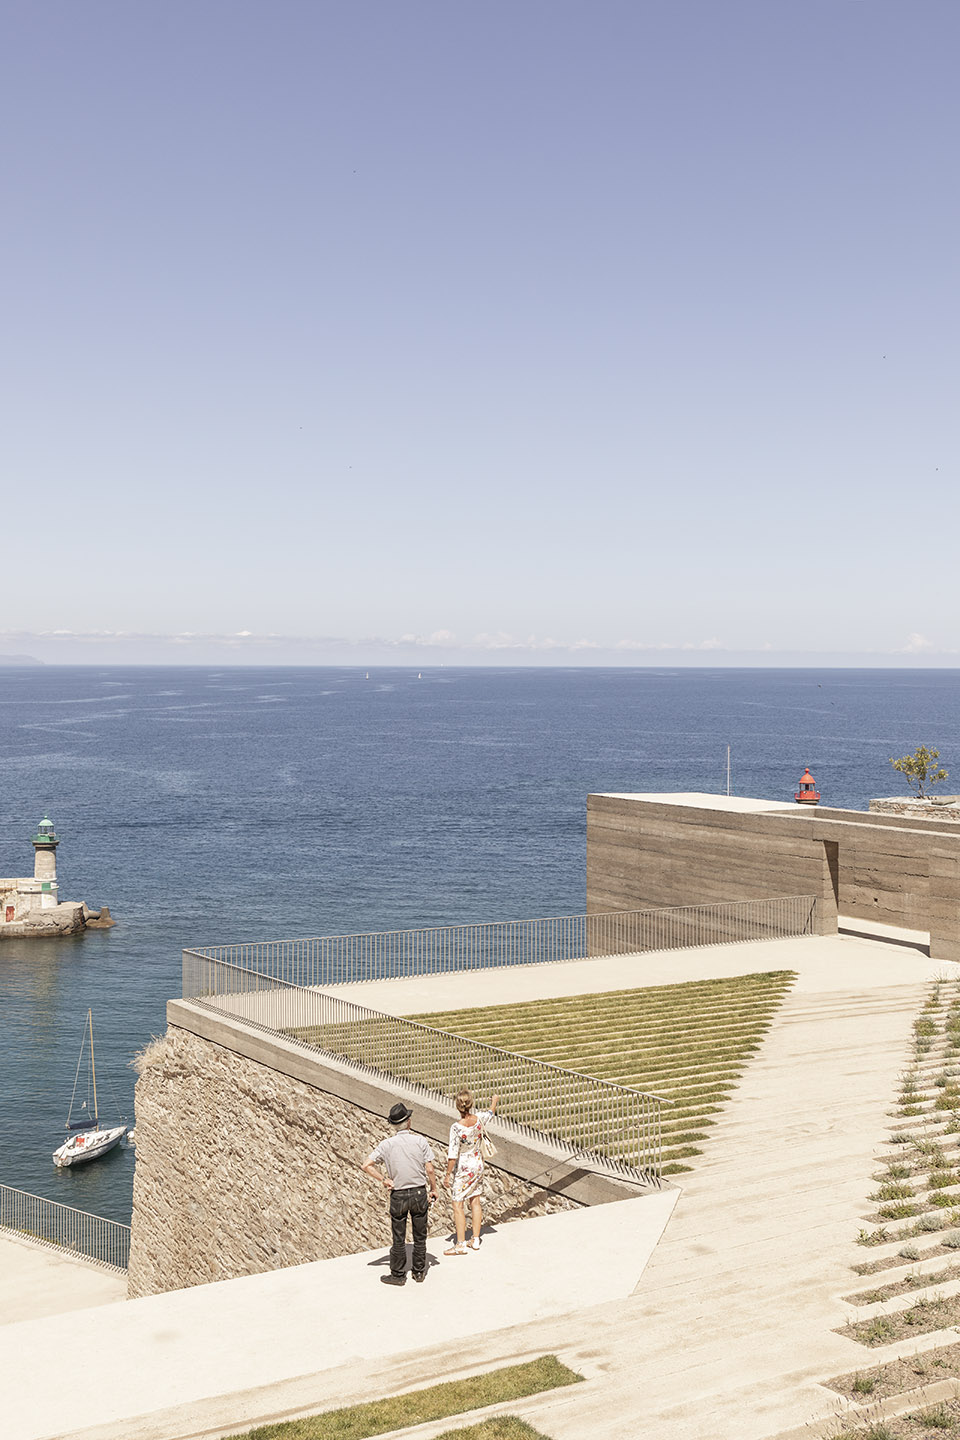 Bastia城堡与港口间的景观空间，法国/充满绿意的舒适连接-20